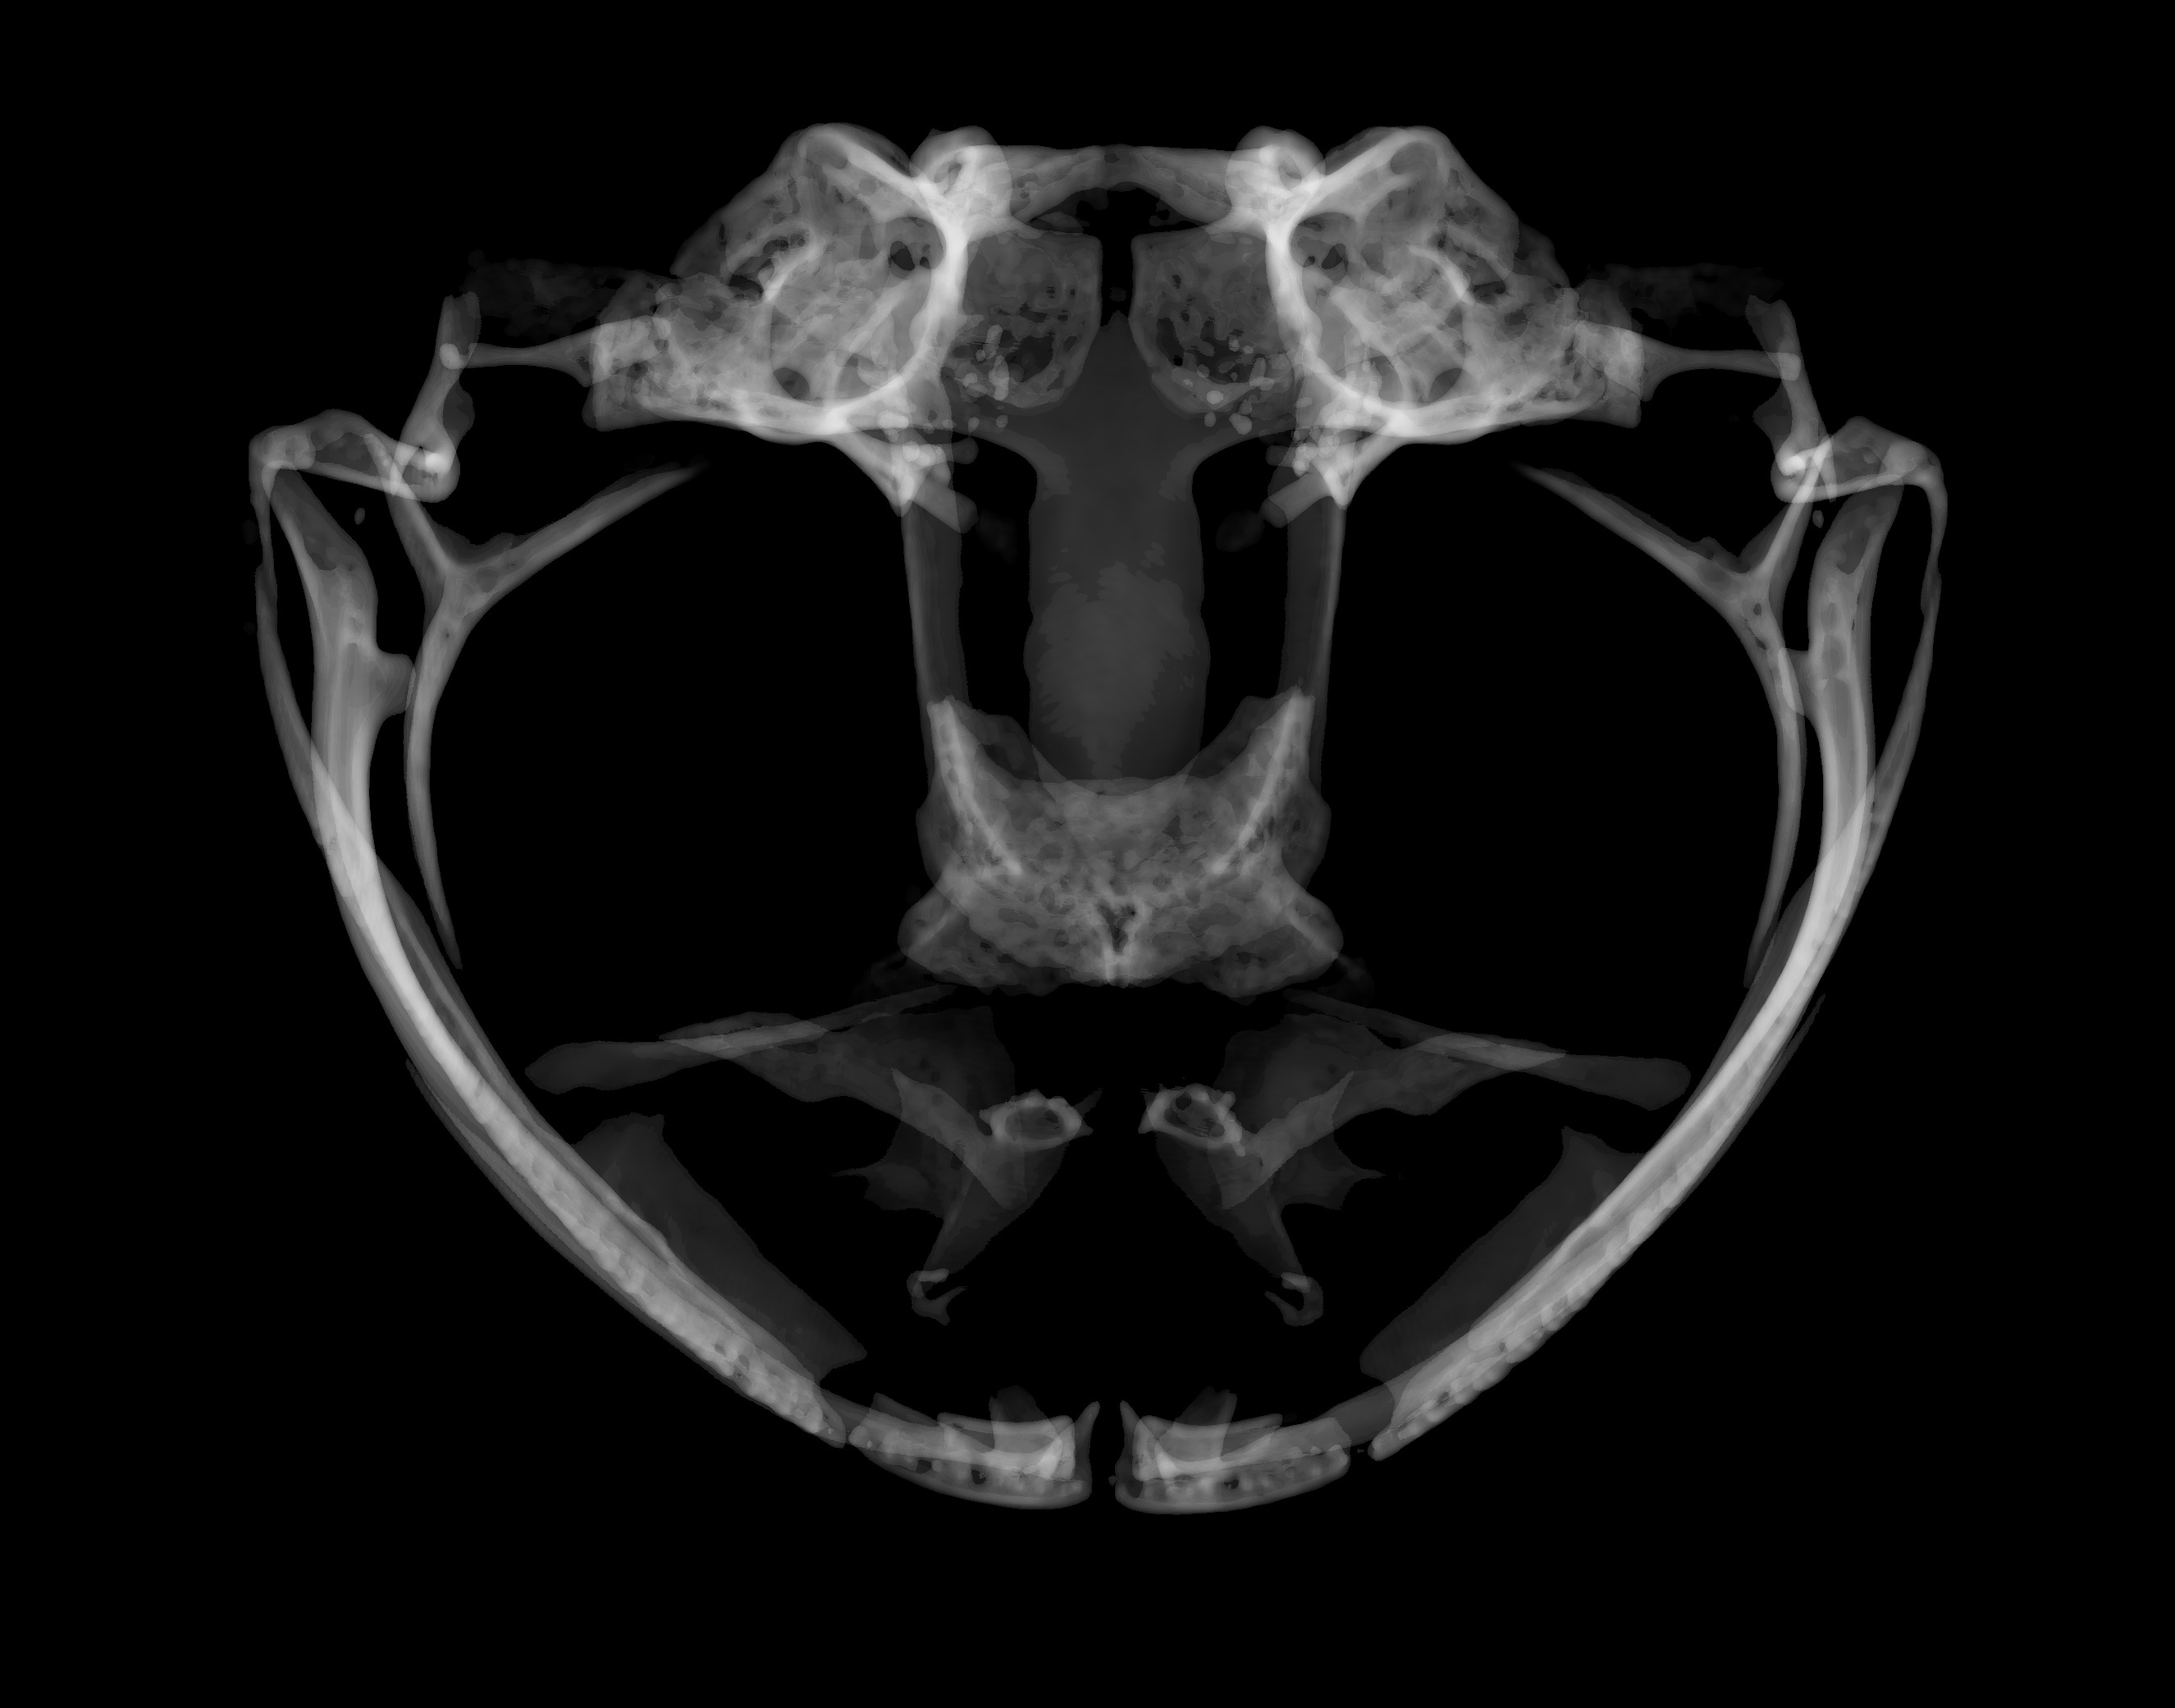 frog skull parts